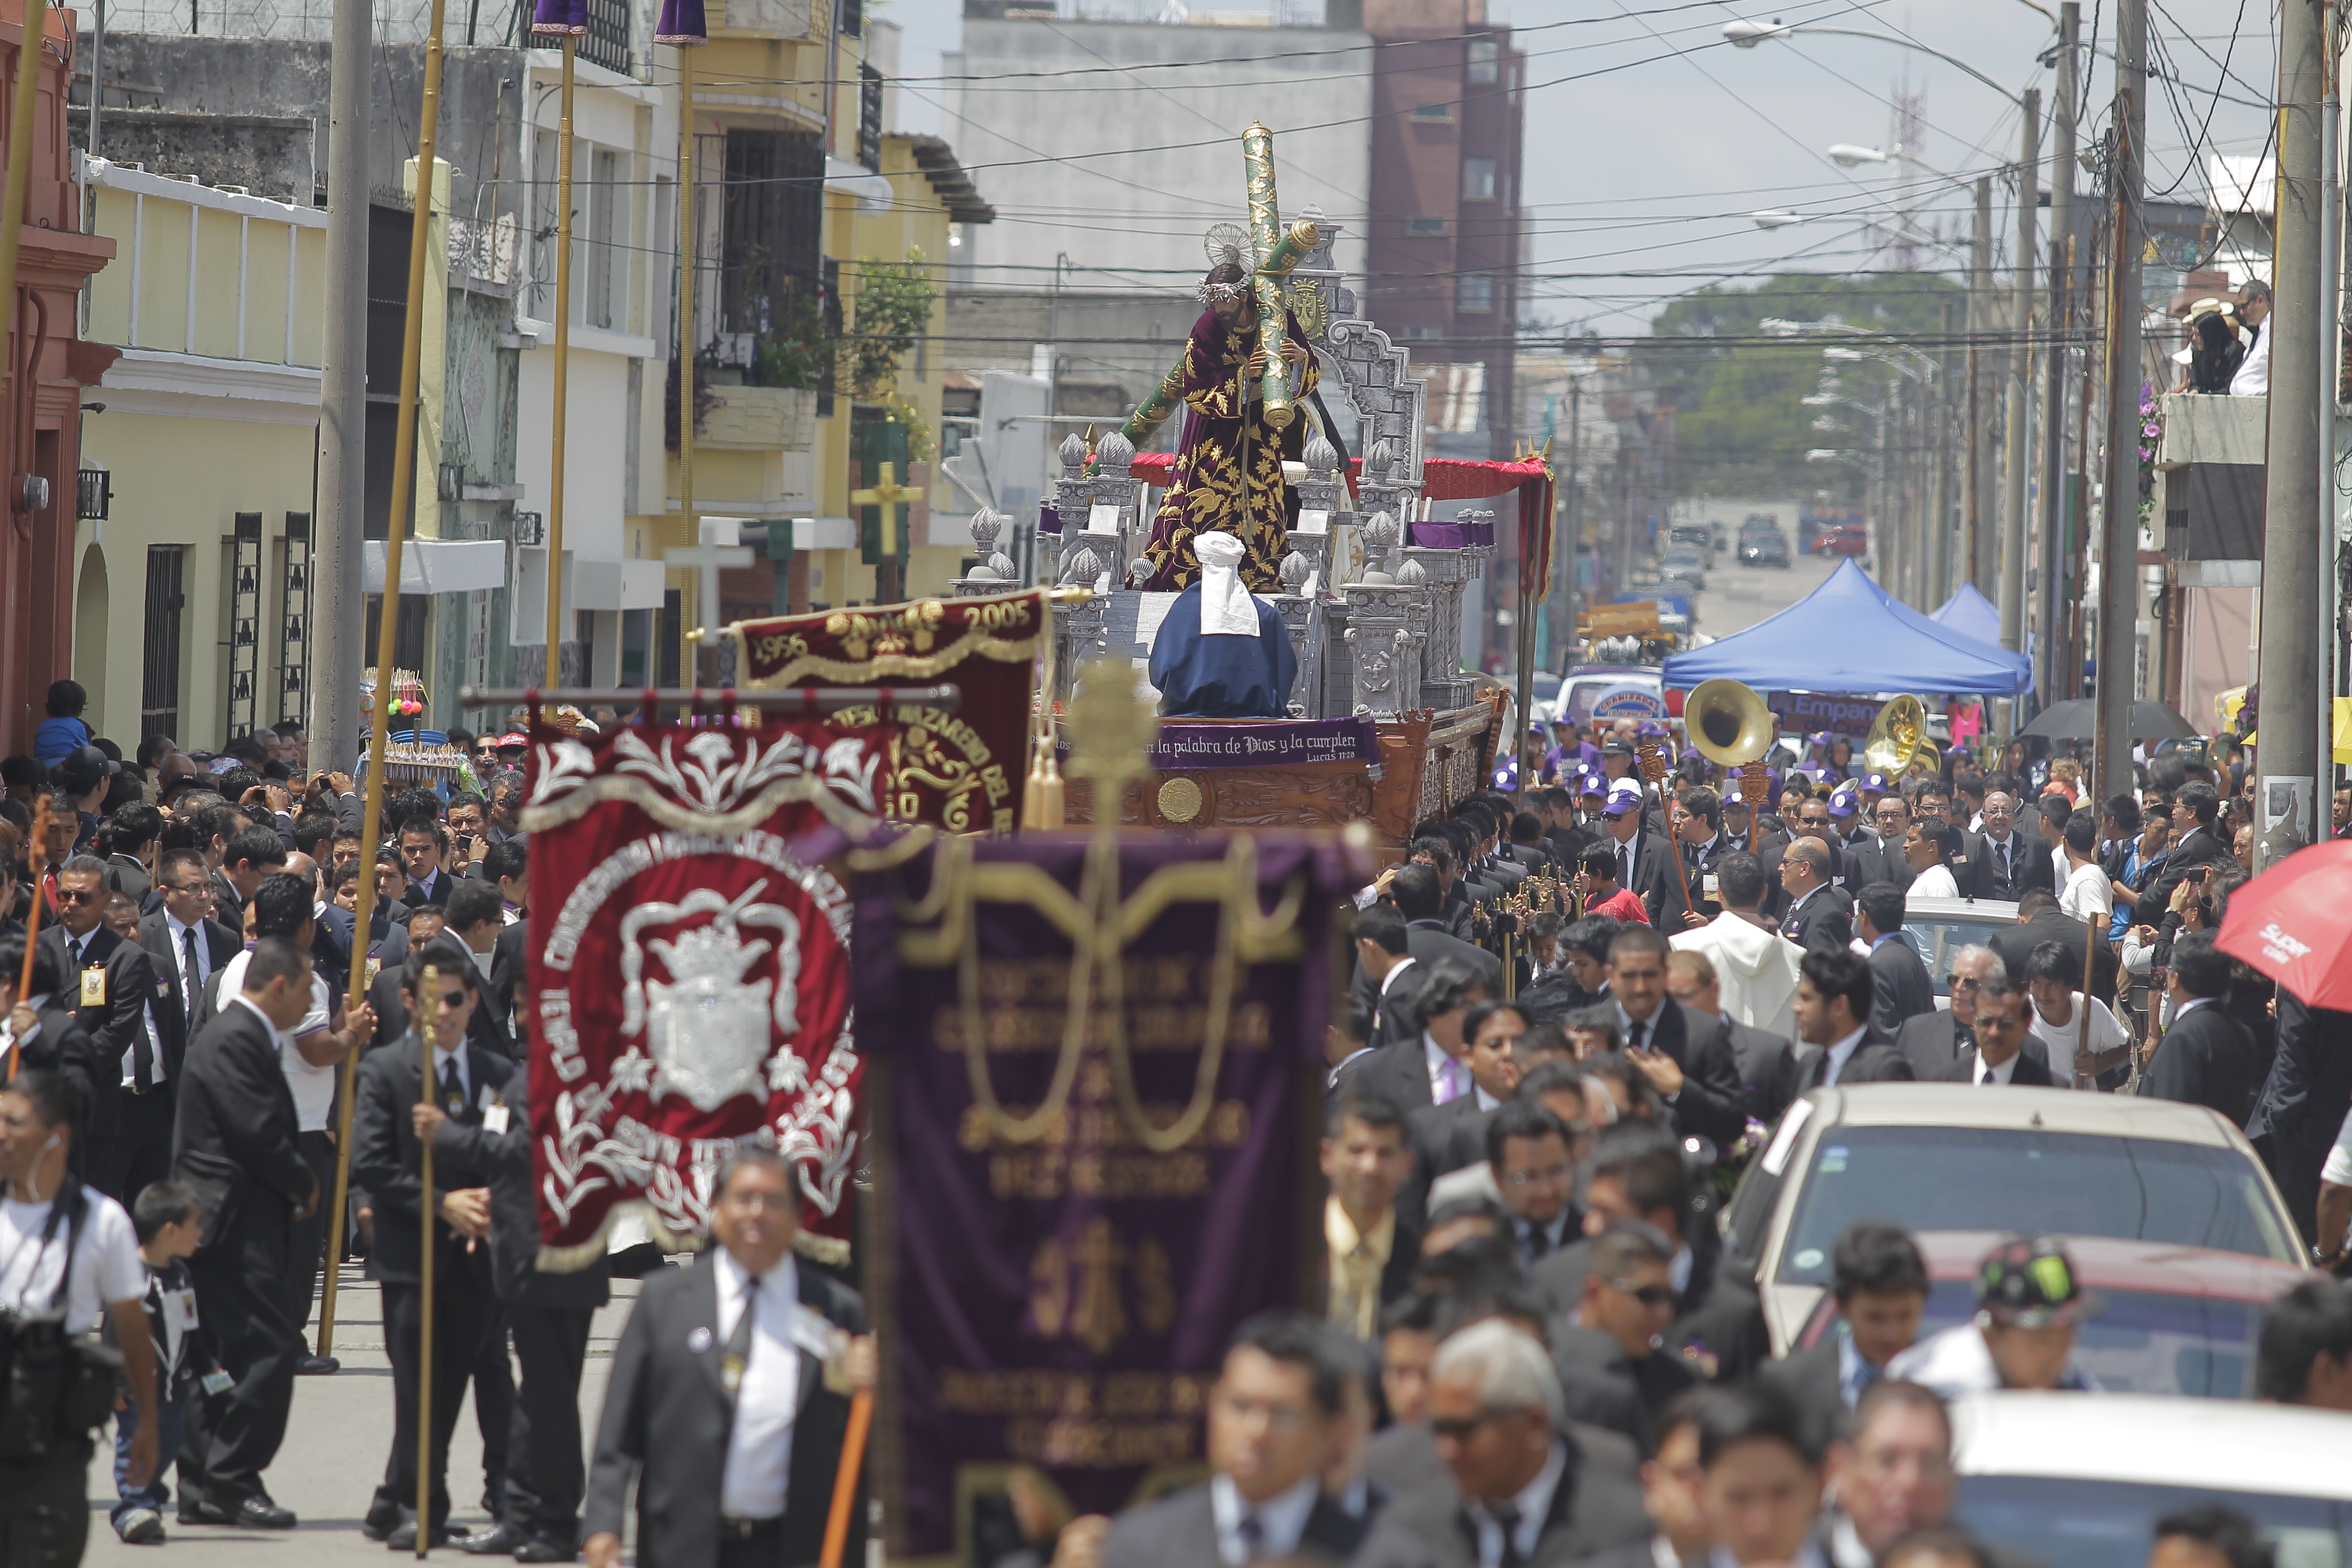 Hasta el momento, los cortejos procesionales podrán continuar como estaban programados según el Gobierno de Guatemala. (Foto Prensa Libre: Hemeroteca)